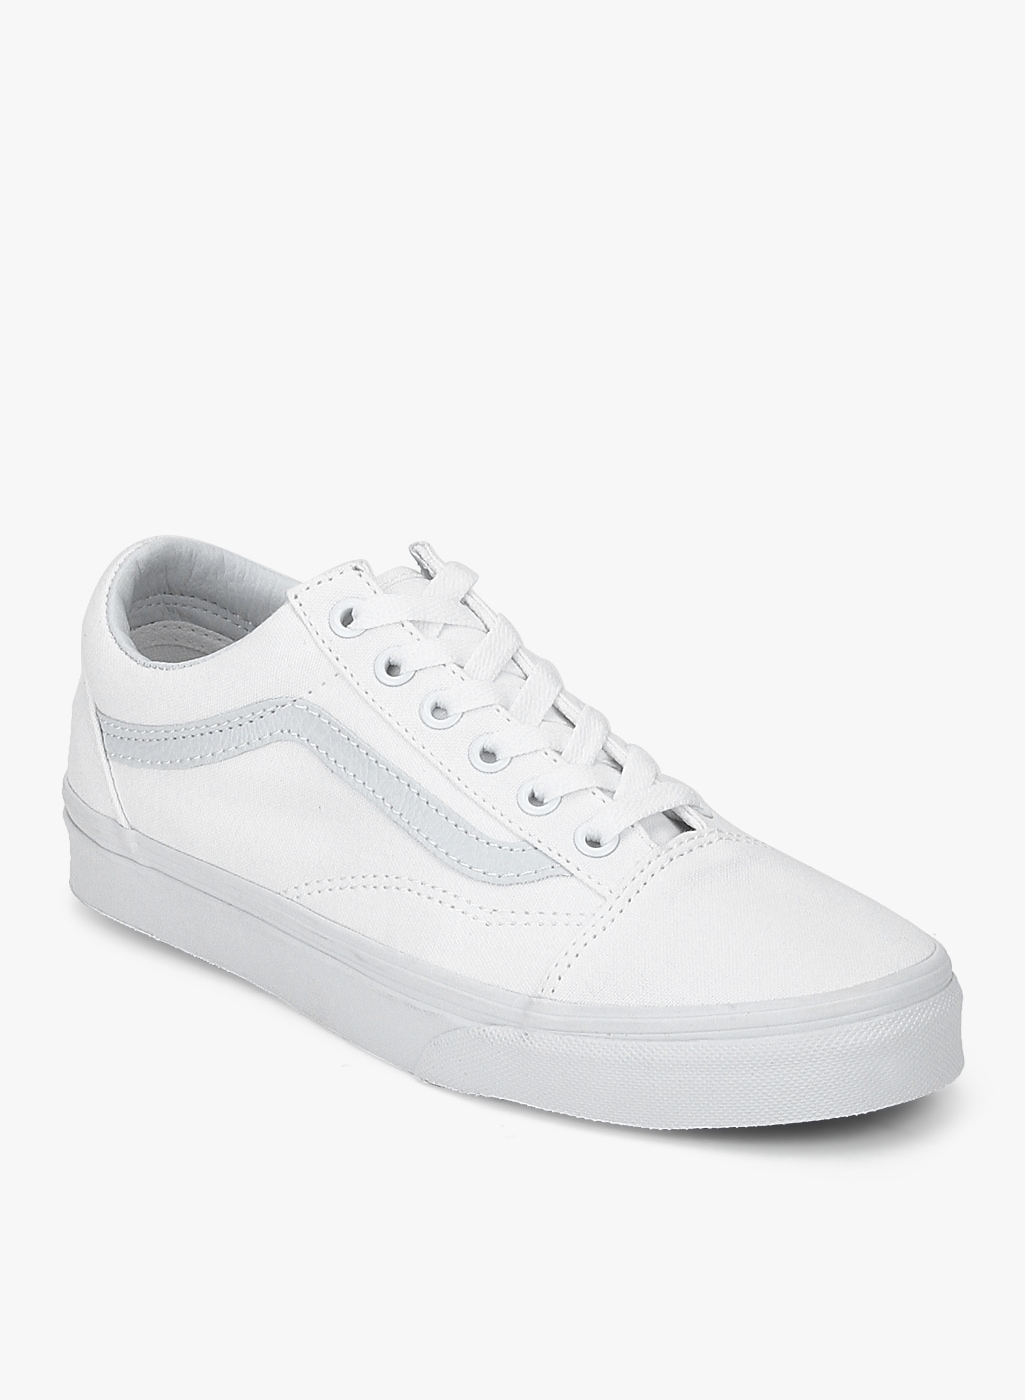 vans old skool white shoes